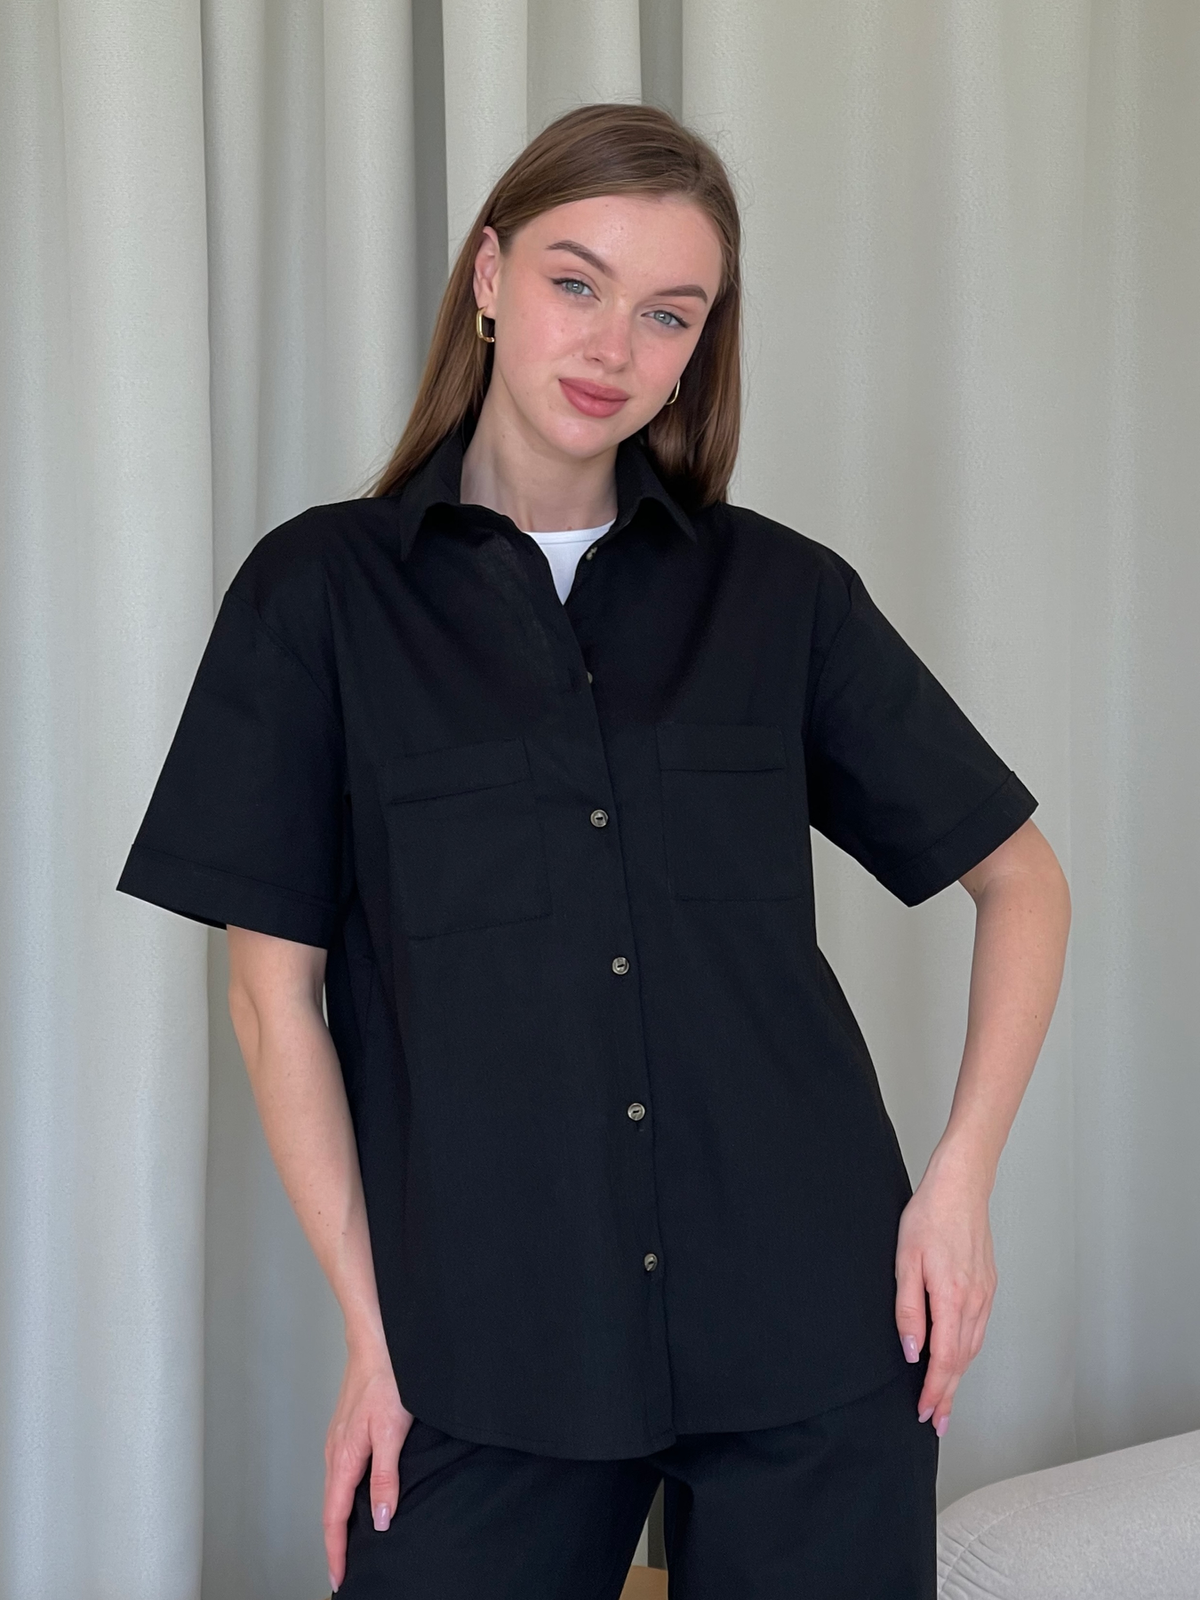 Купить Льняная рубашка с коротким рукавом черная Merlini Нино 200001201 размер 42-44 (S-M) в интернет-магазине